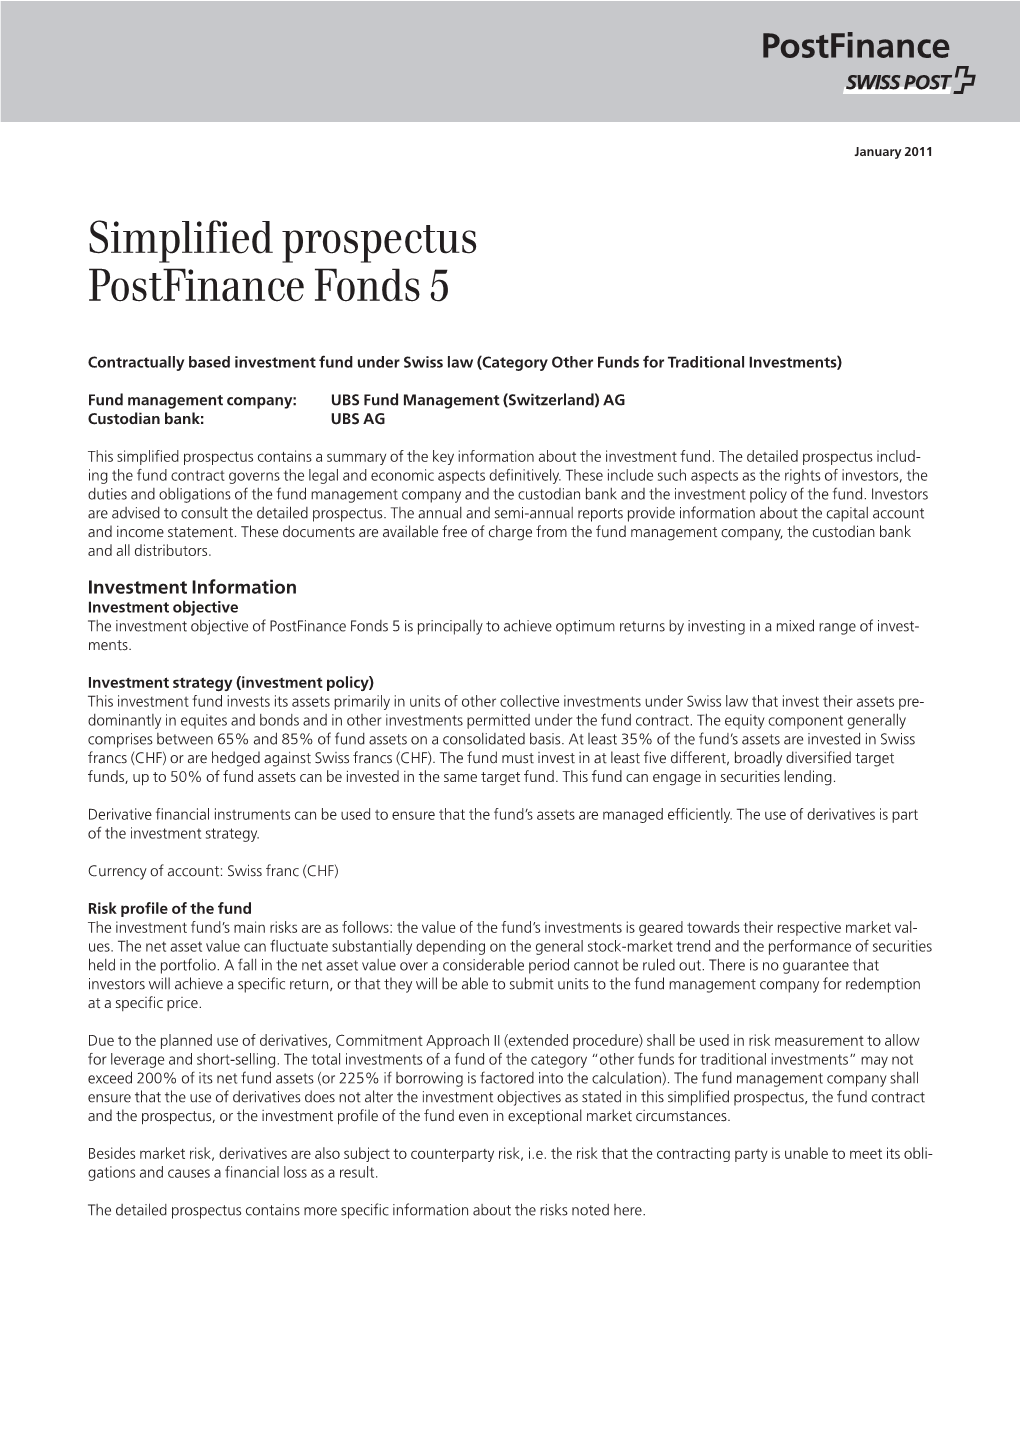 Simplified Prospectus Postfinance Fonds 5